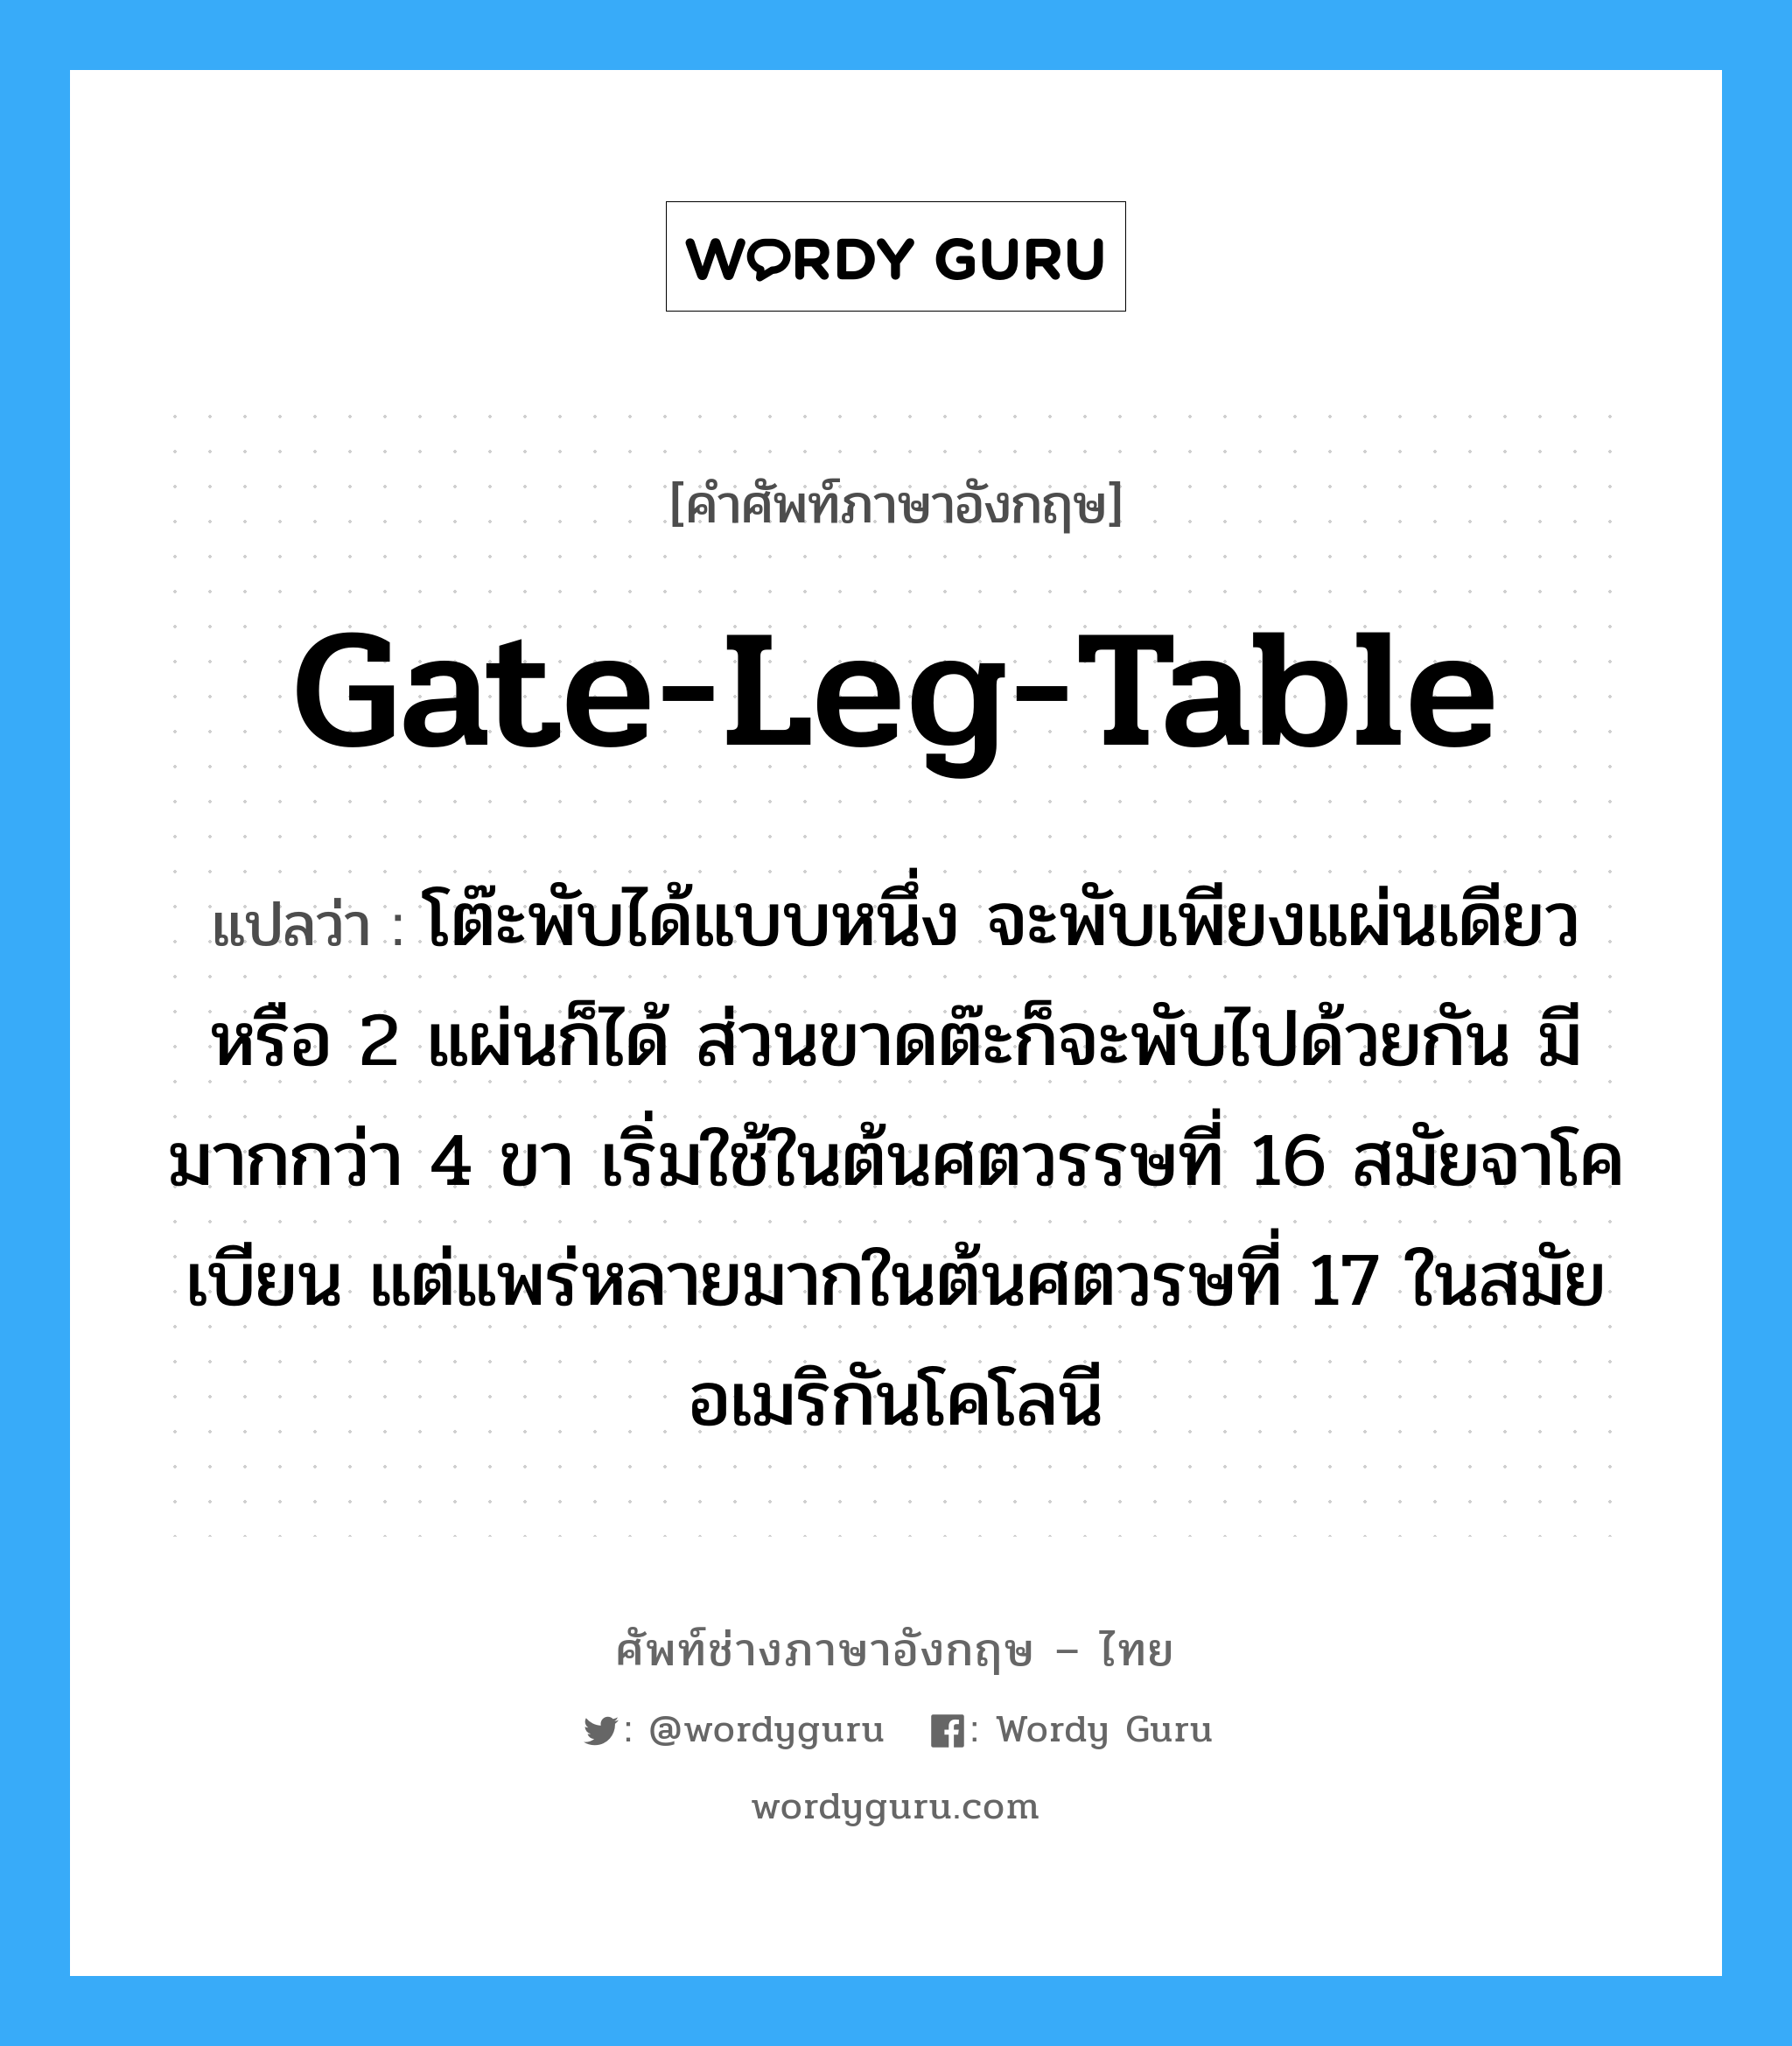 gate-leg-table แปลว่า?, คำศัพท์ช่างภาษาอังกฤษ - ไทย gate-leg-table คำศัพท์ภาษาอังกฤษ gate-leg-table แปลว่า โต๊ะพับได้แบบหนึ่ง จะพับเพียงแผ่นเดียวหรือ 2 แผ่นก็ได้ ส่วนขาดต๊ะก็จะพับไปด้วยกัน มีมากกว่า 4 ขา เริ่มใช้ในต้นศตวรรษที่ 16 สมัยจาโคเบียน แต่แพร่หลายมากในต้นศตวรษที่ 17 ในสมัยอเมริกันโคโลนี